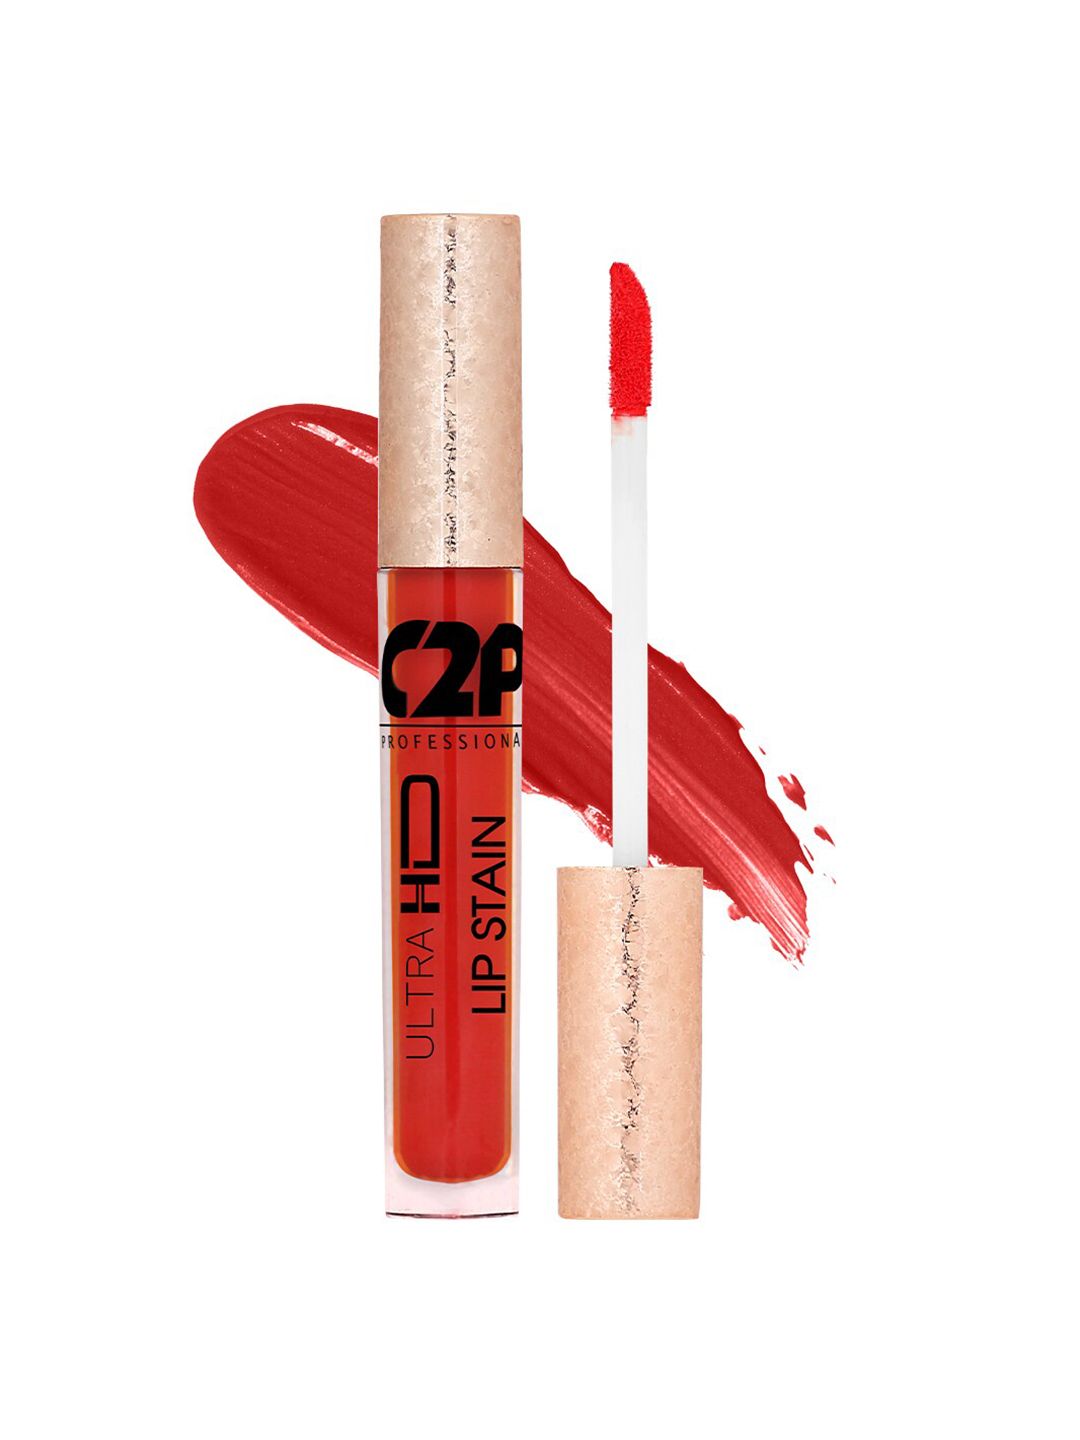 C2P PROFESSIONAL MAKEUP Lip Stain Liquid Lipstick - Tender Lotus 34 5 ml Price in India